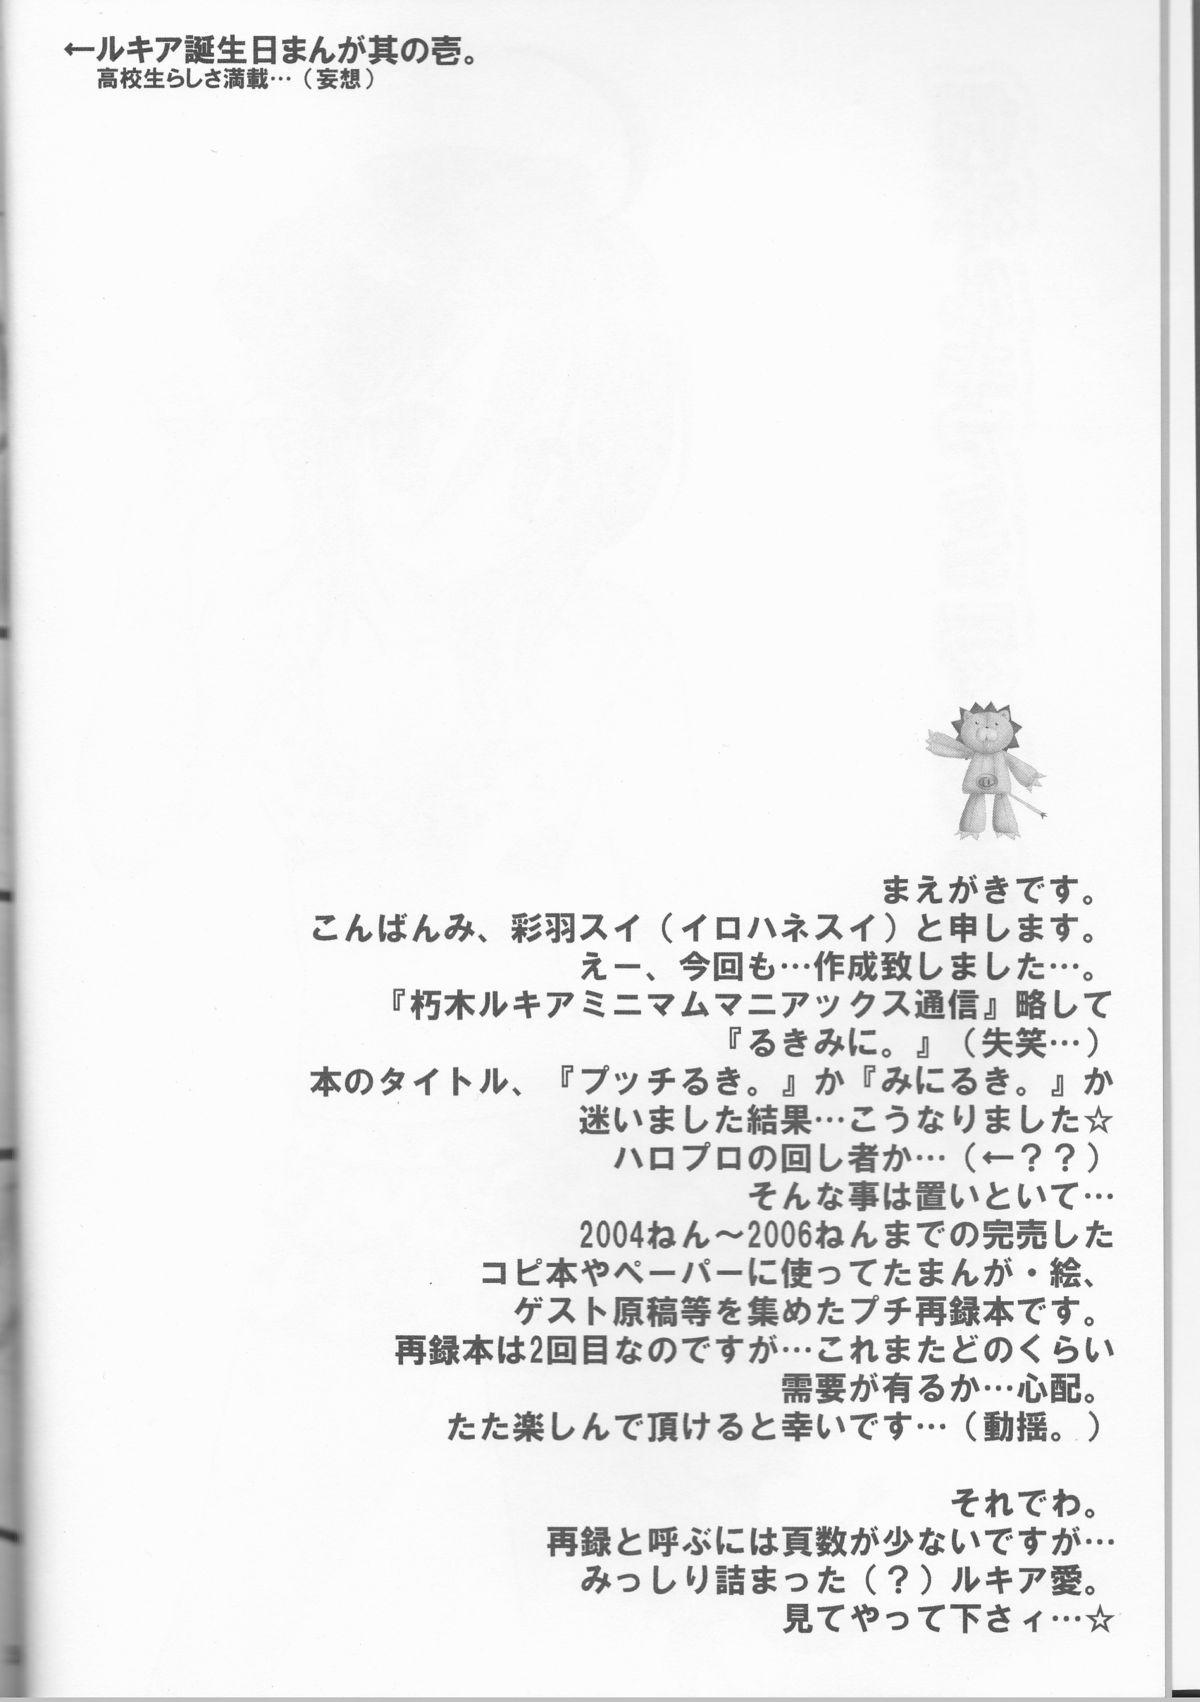 Rukia Kuchiki Minimum Maniax File 3